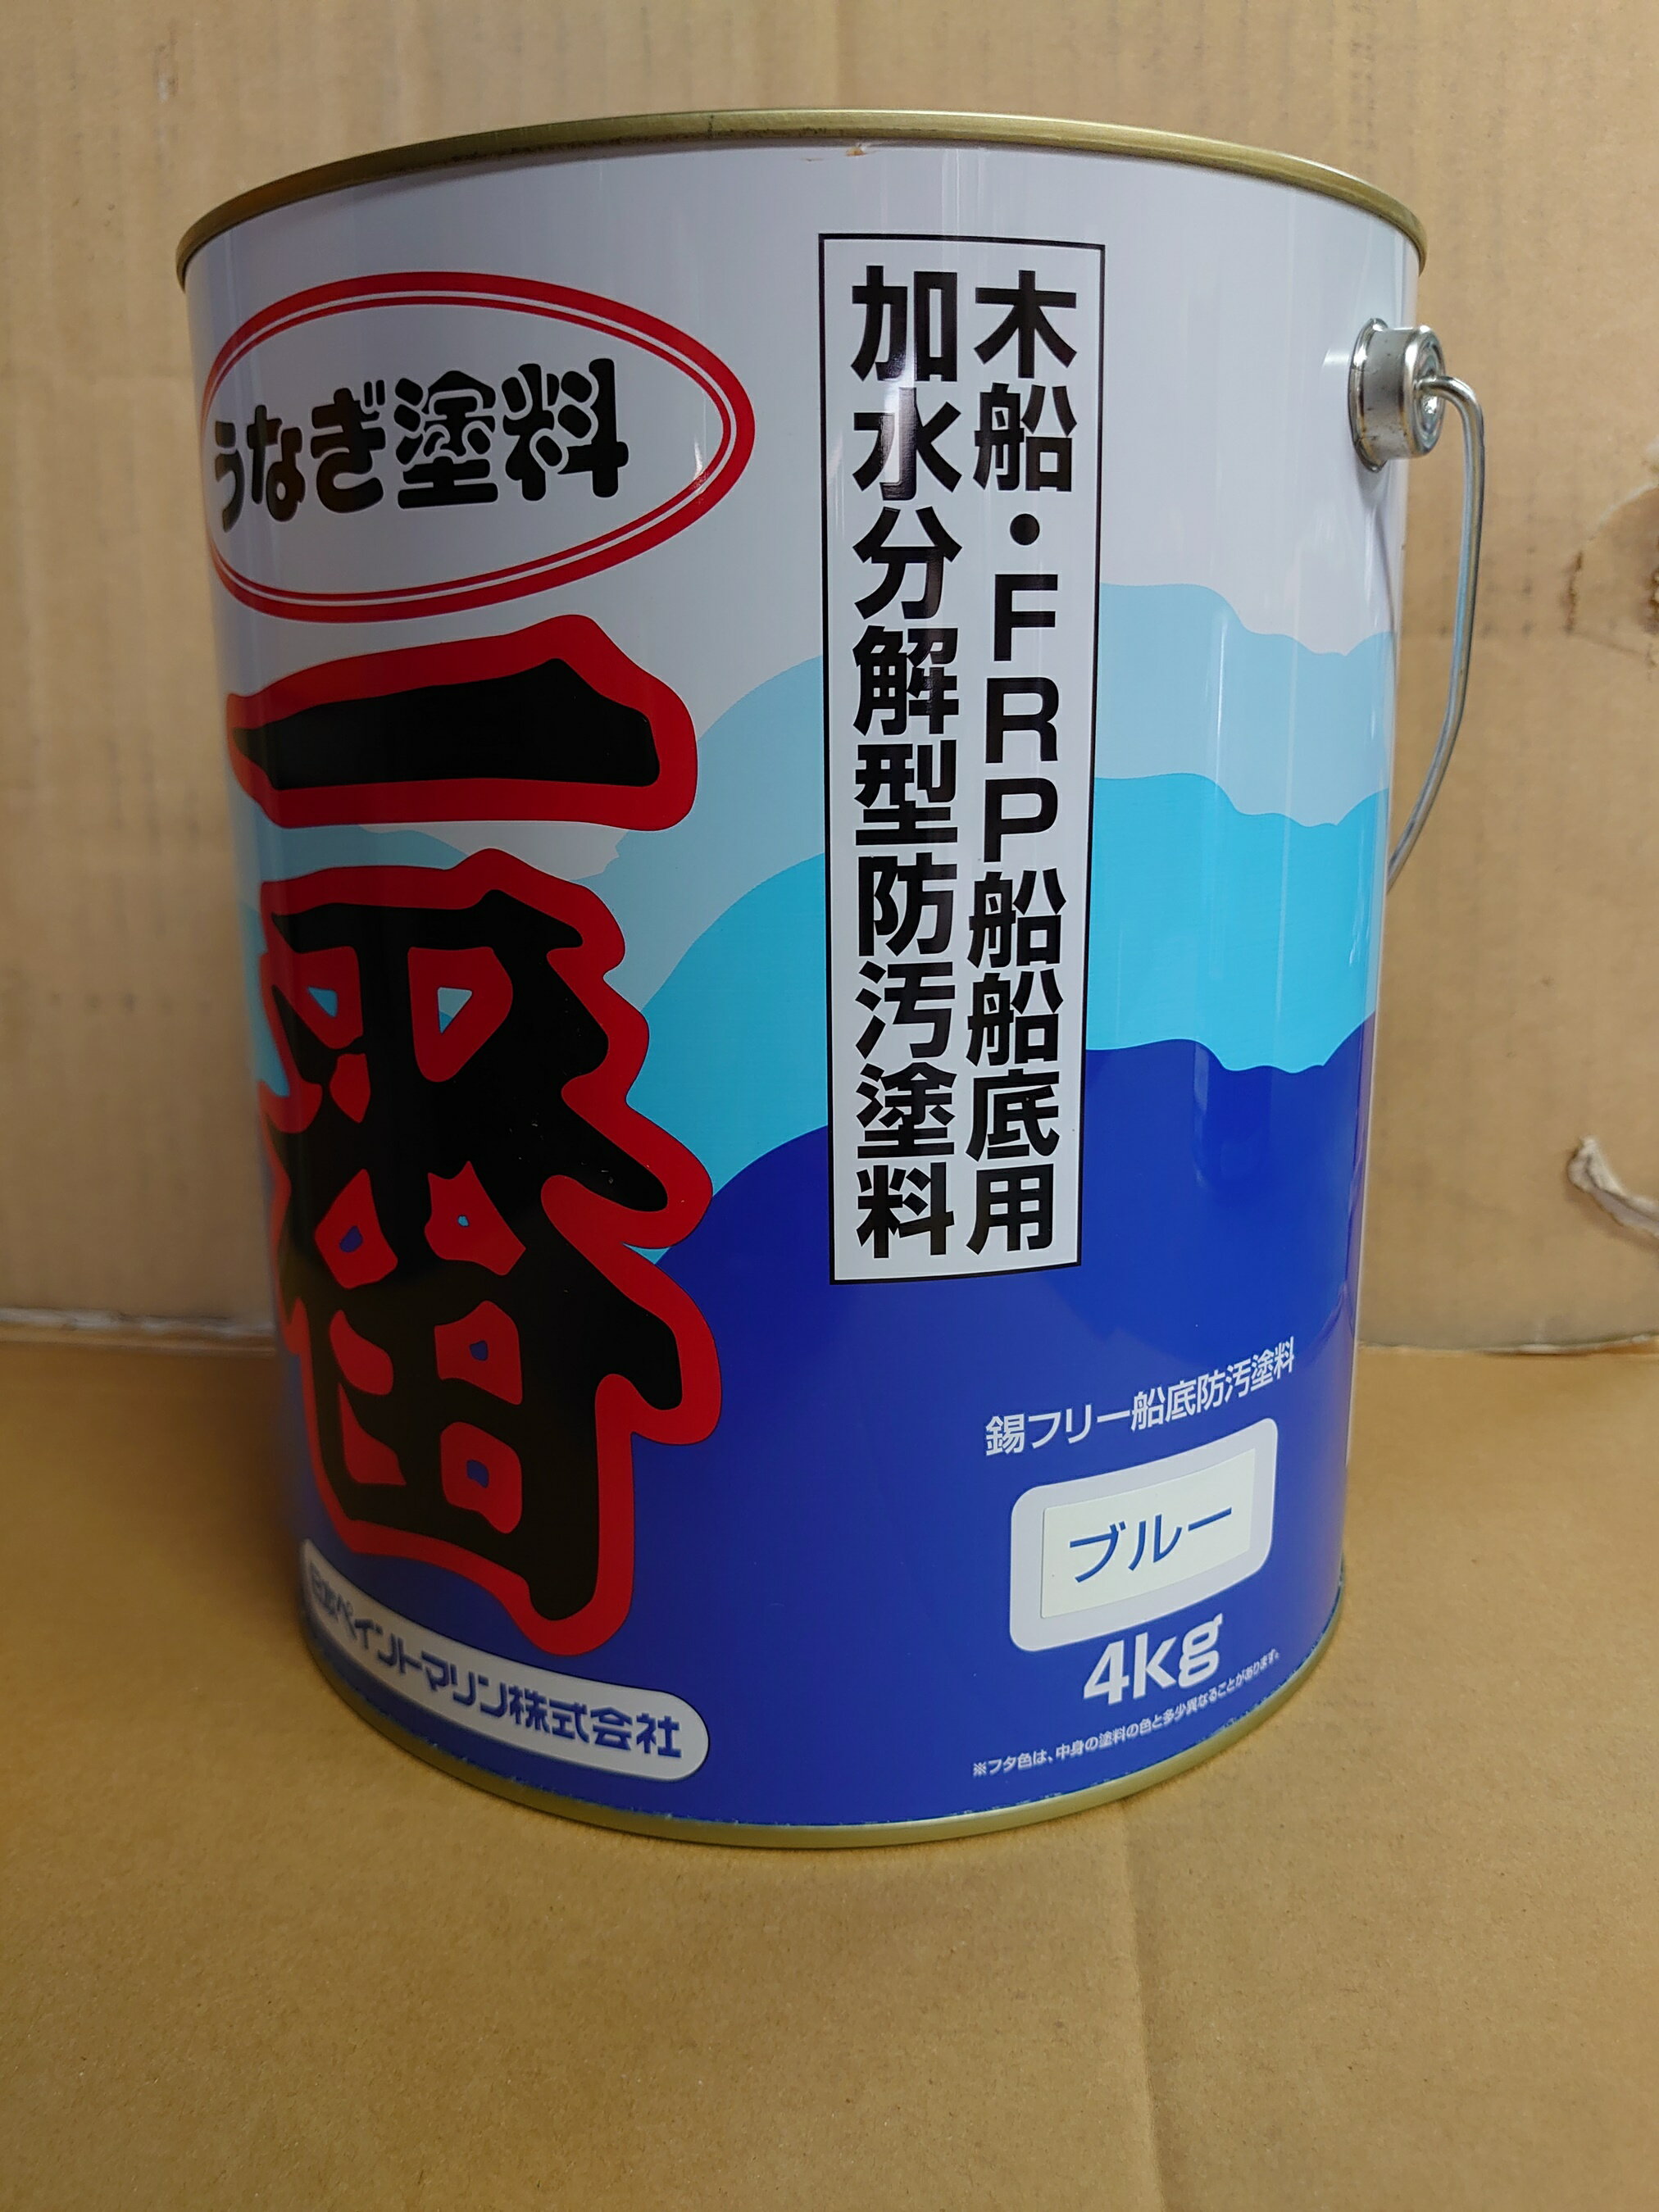 日本ペイント うなぎ一番 青 4kg 船底塗料 FRP塗料 うなぎ塗料一番 3缶セット ブルー うなぎ1番 『送料無料』